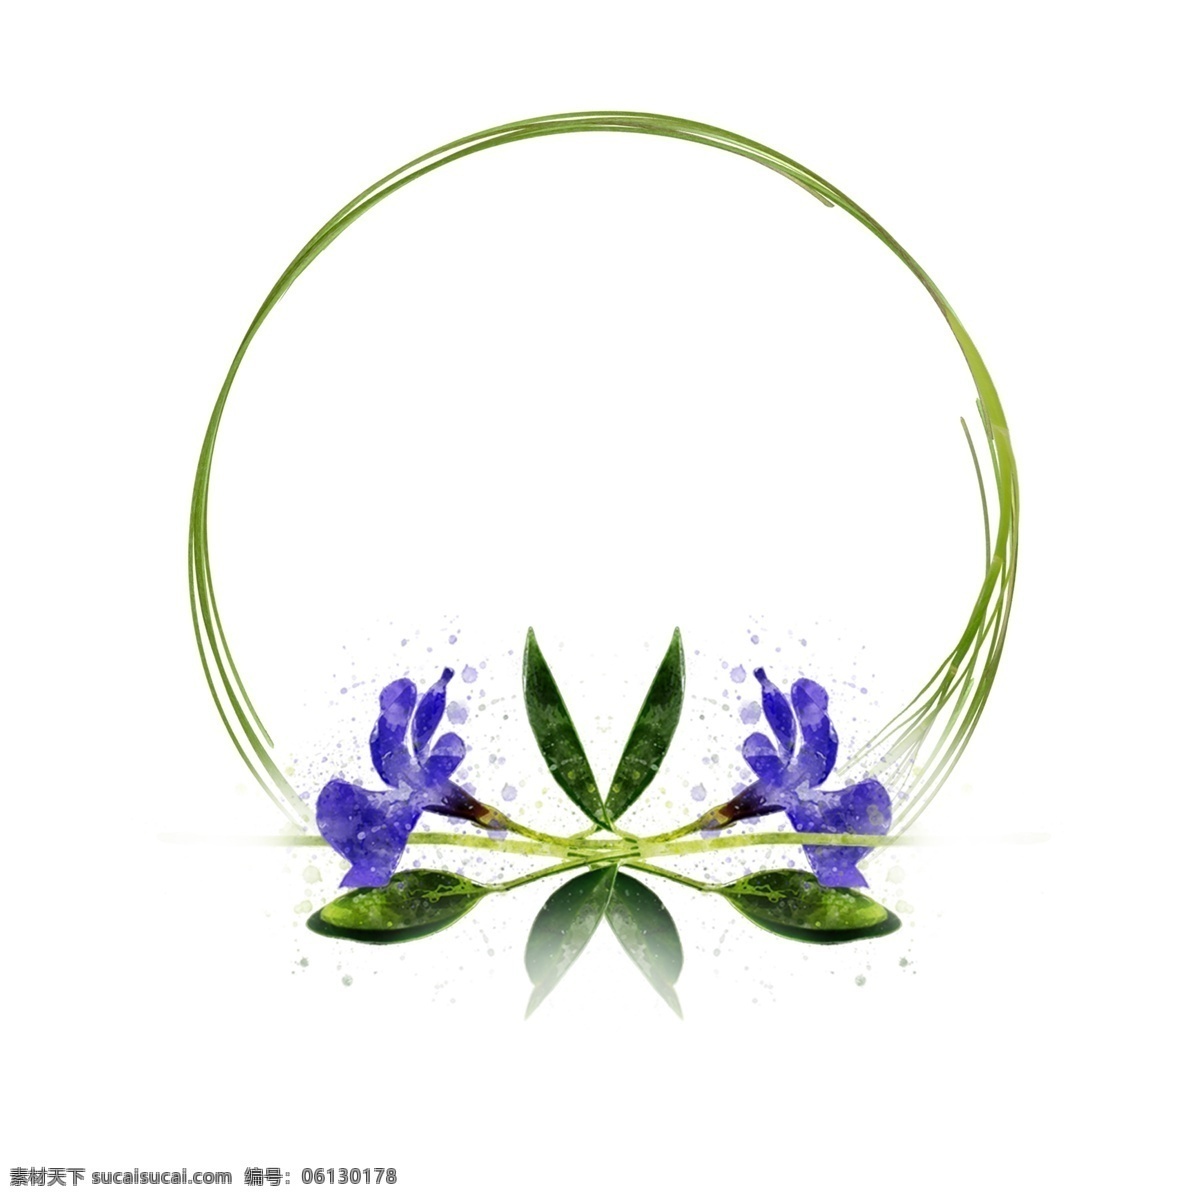 手绘 圆形 植物 花卉 紫色 水彩 边框 元素 原创 手绘边框 植物边框 圆形边框